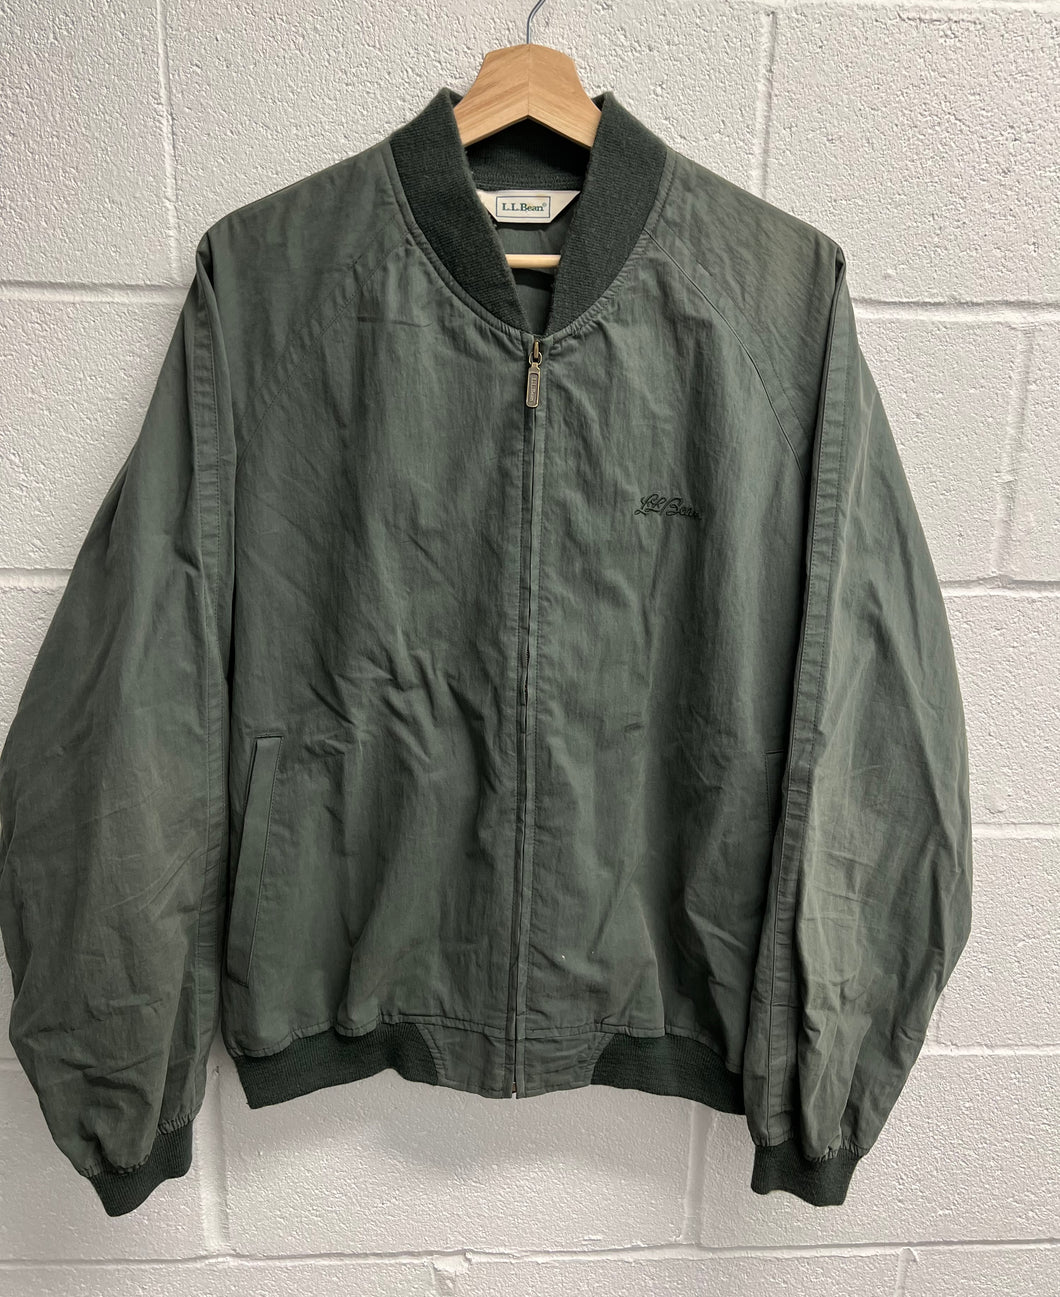 90s L.L. Bean Green Zip up Jacket